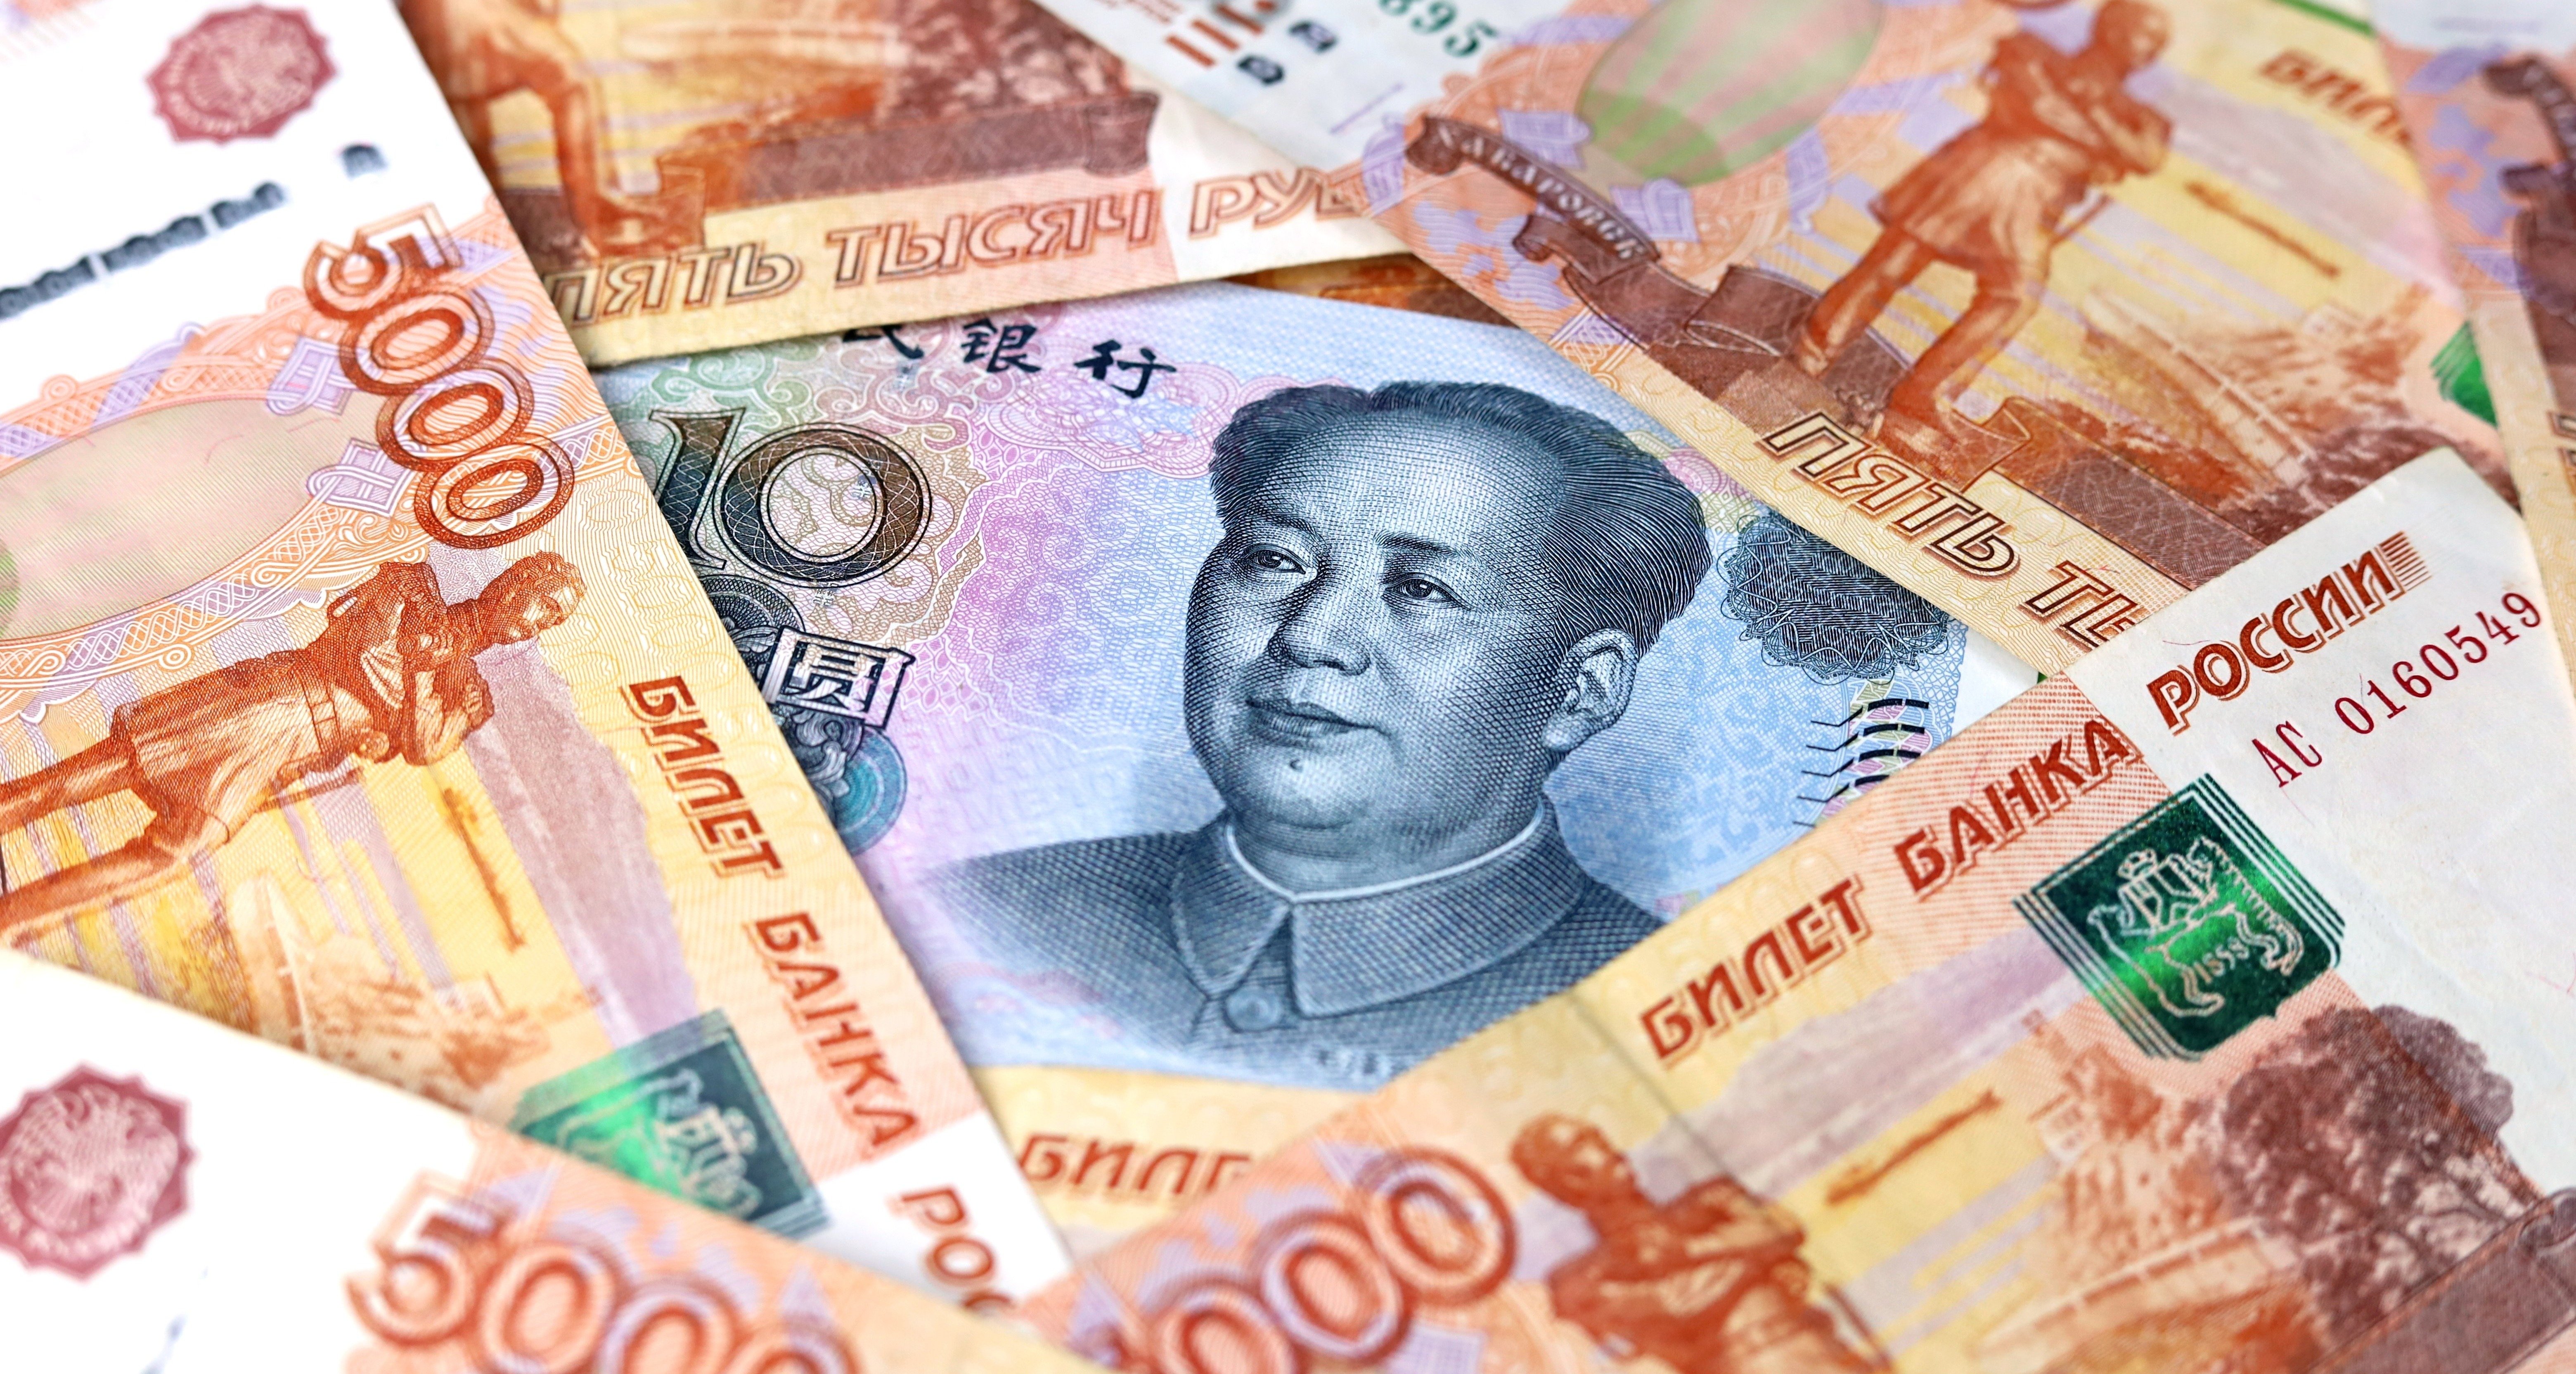 Июань. Китайский юань. Китайская валюта. Деньги юани. Юани в рубли.